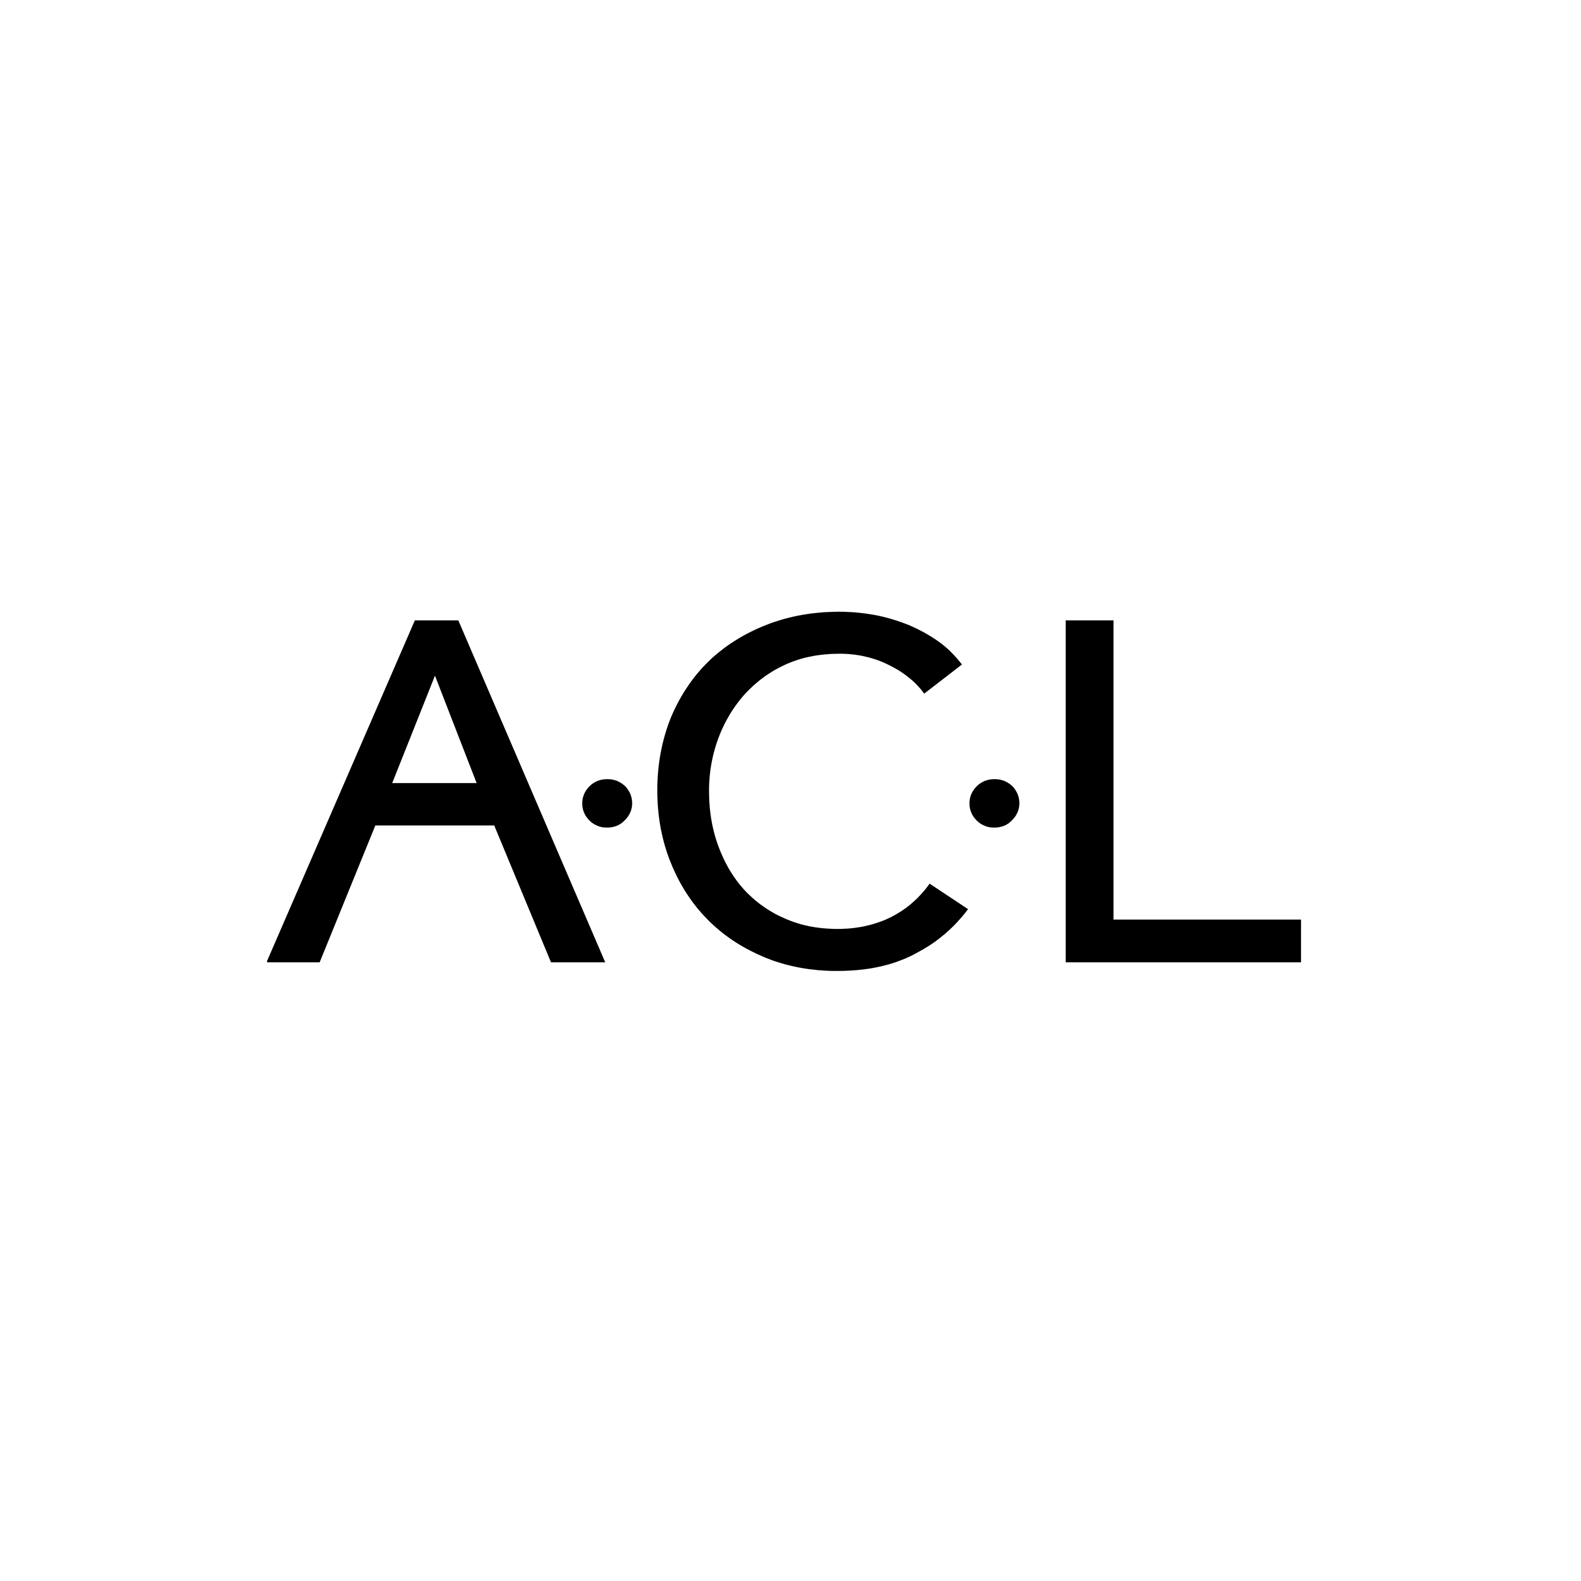 A continuous lean logo